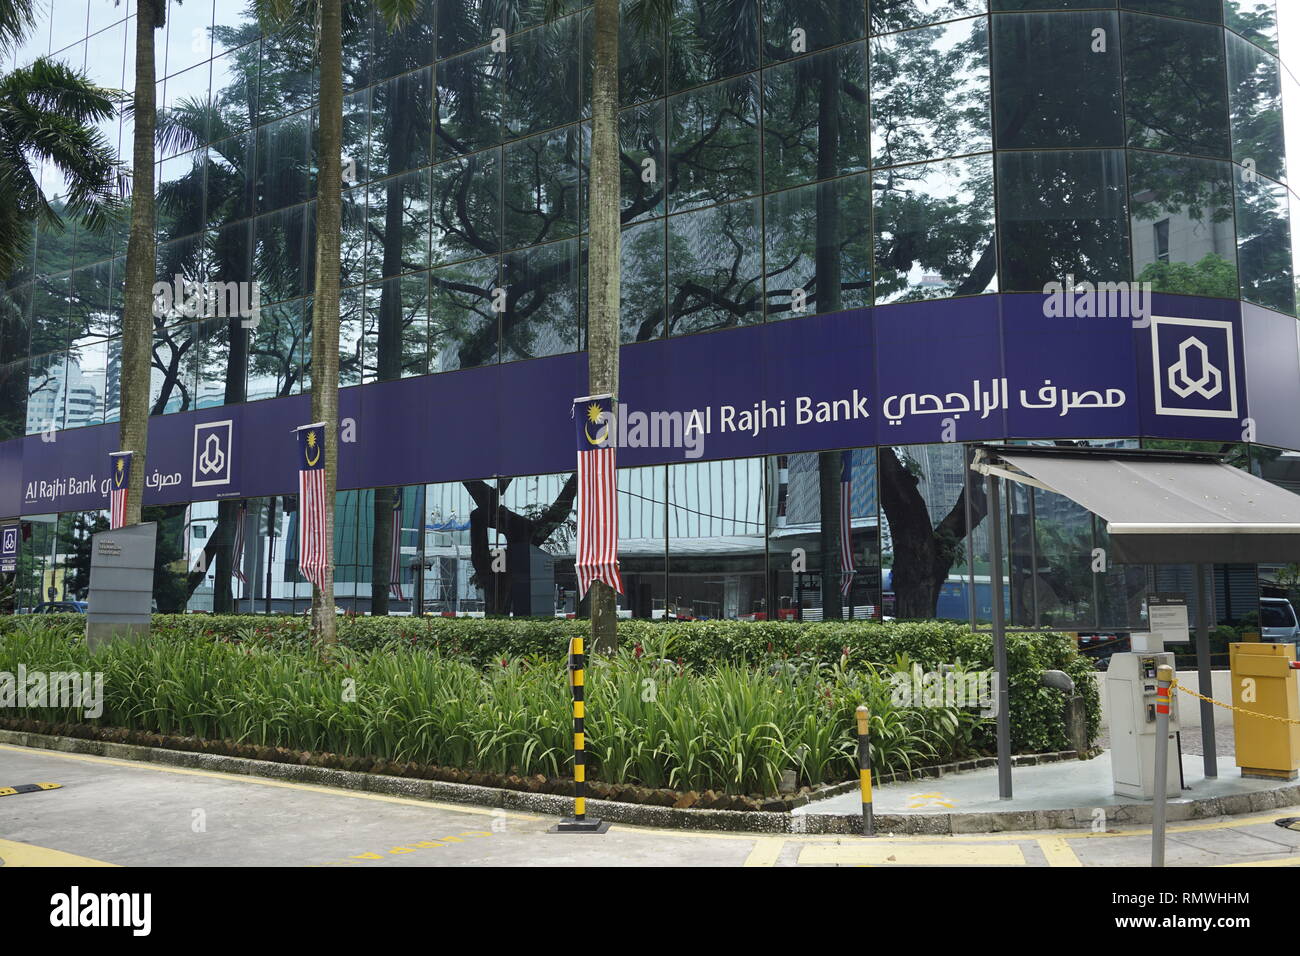 Al-Rajhi, a Saudi Arabian bank in Kuala Lumpur, Malaysia Stock Photo